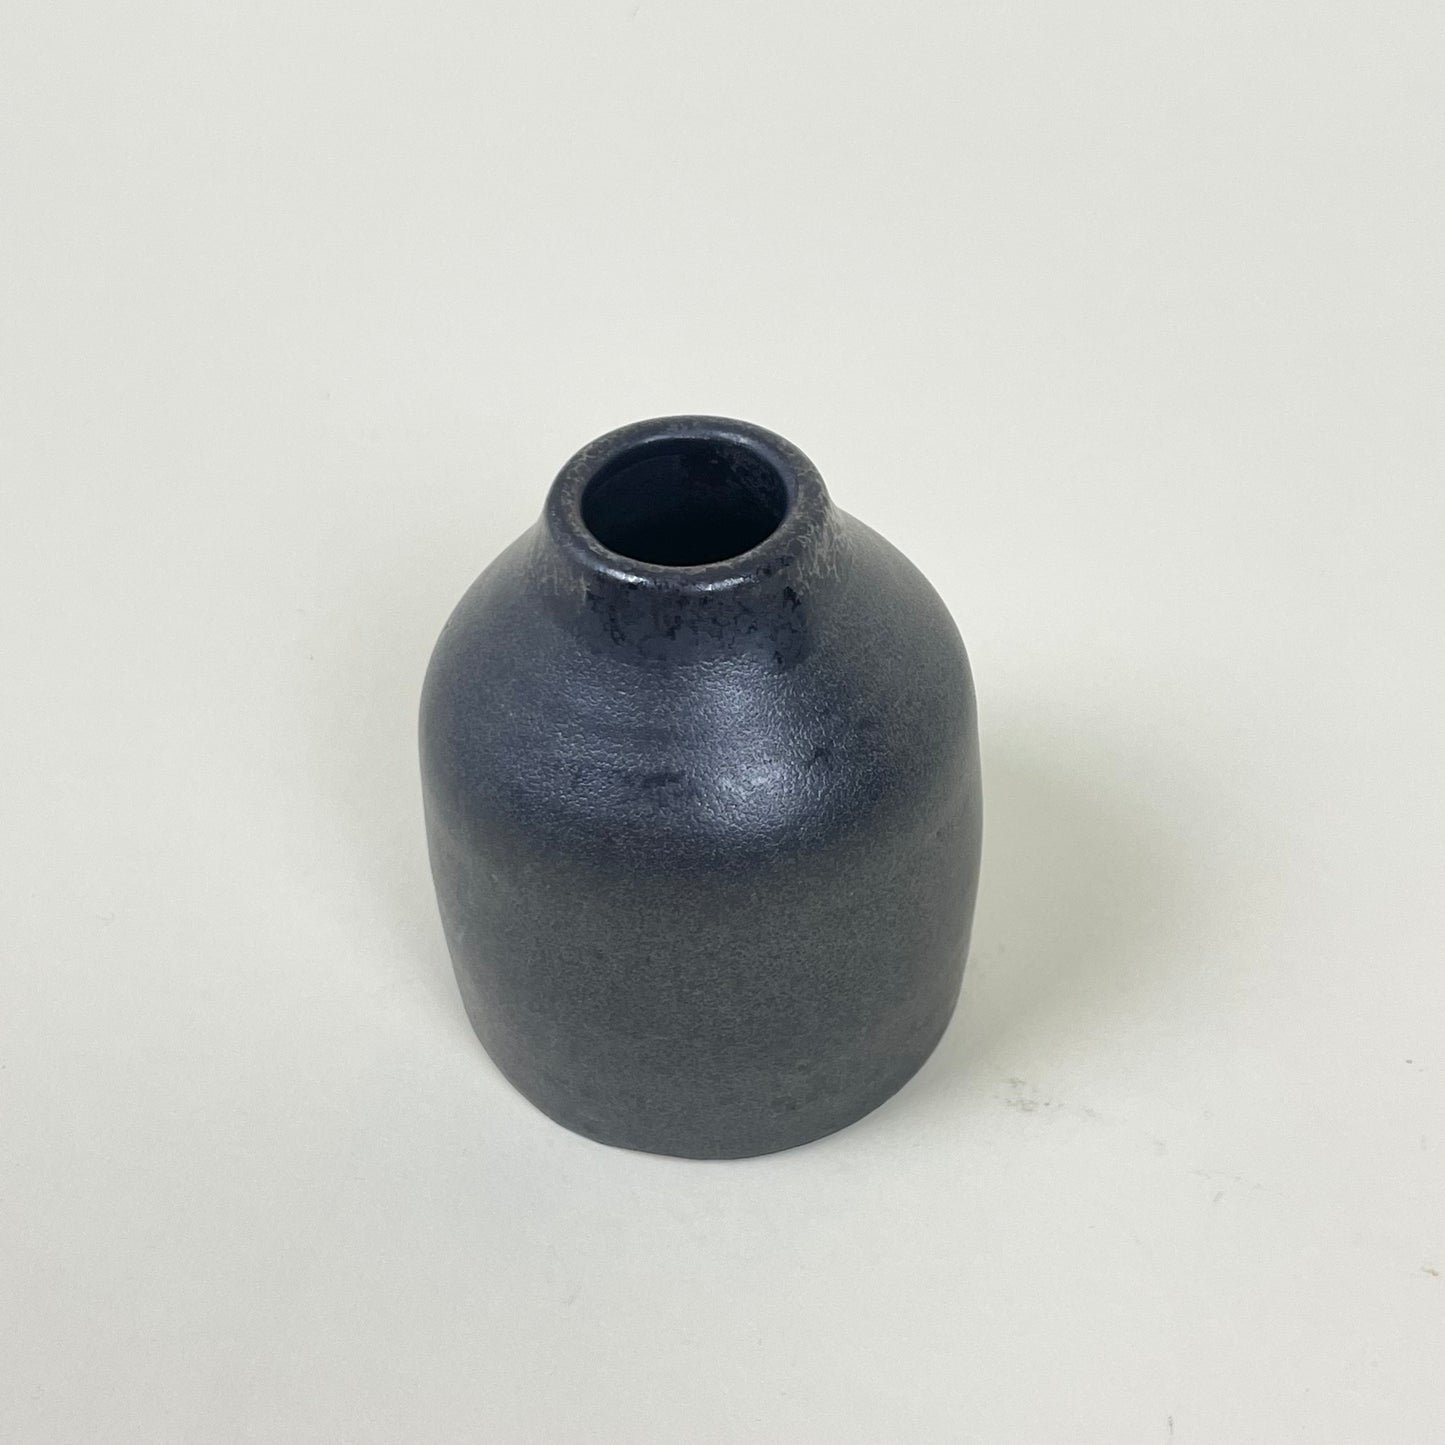 Ceramic vase by Sonja Lindgren